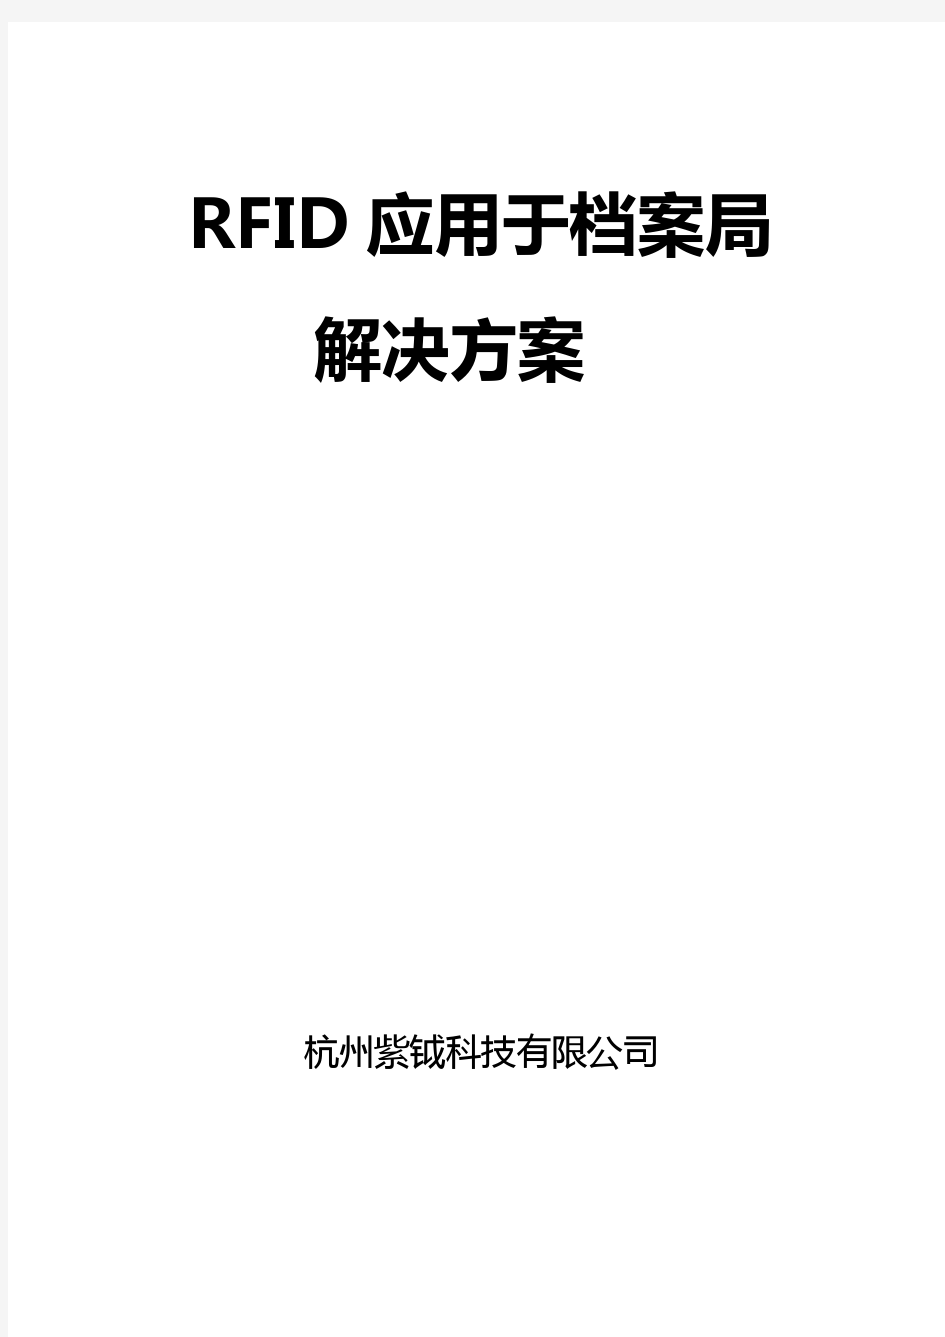 RFID智能档案管理系统解决方案